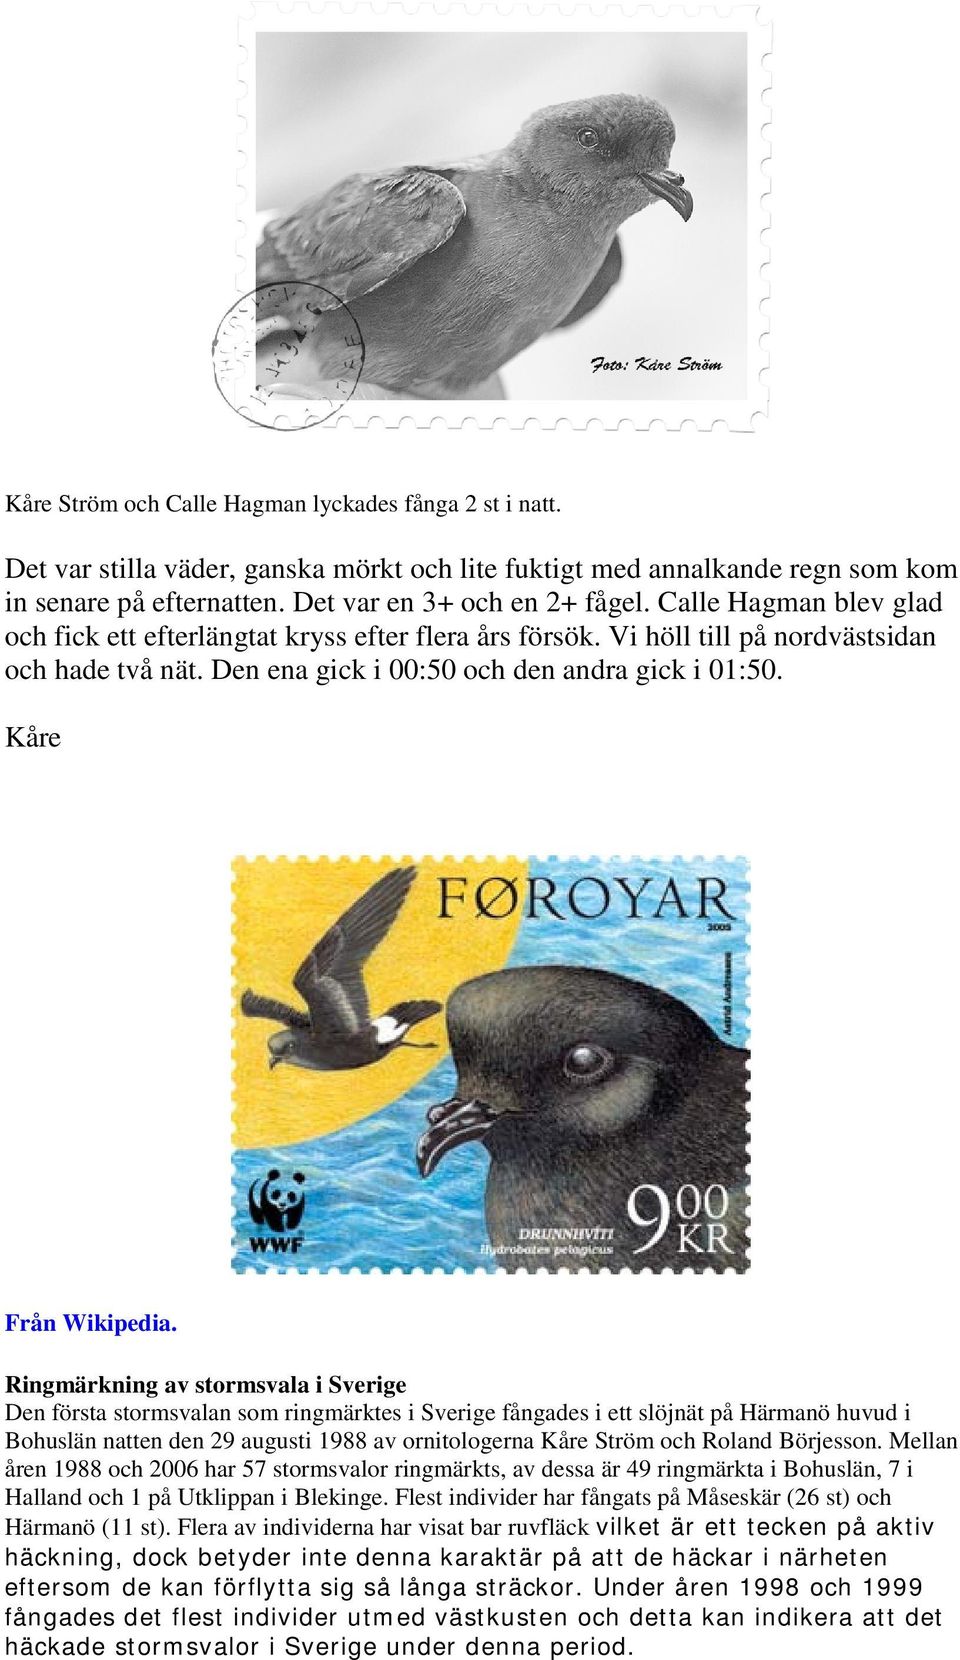 Ringmärkning av stormsvala i Sverige Den första stormsvalan som ringmärktes i Sverige fångades i ett slöjnät på Härmanö huvud i Bohuslän natten den 29 augusti 1988 av ornitologerna Kåre Ström och